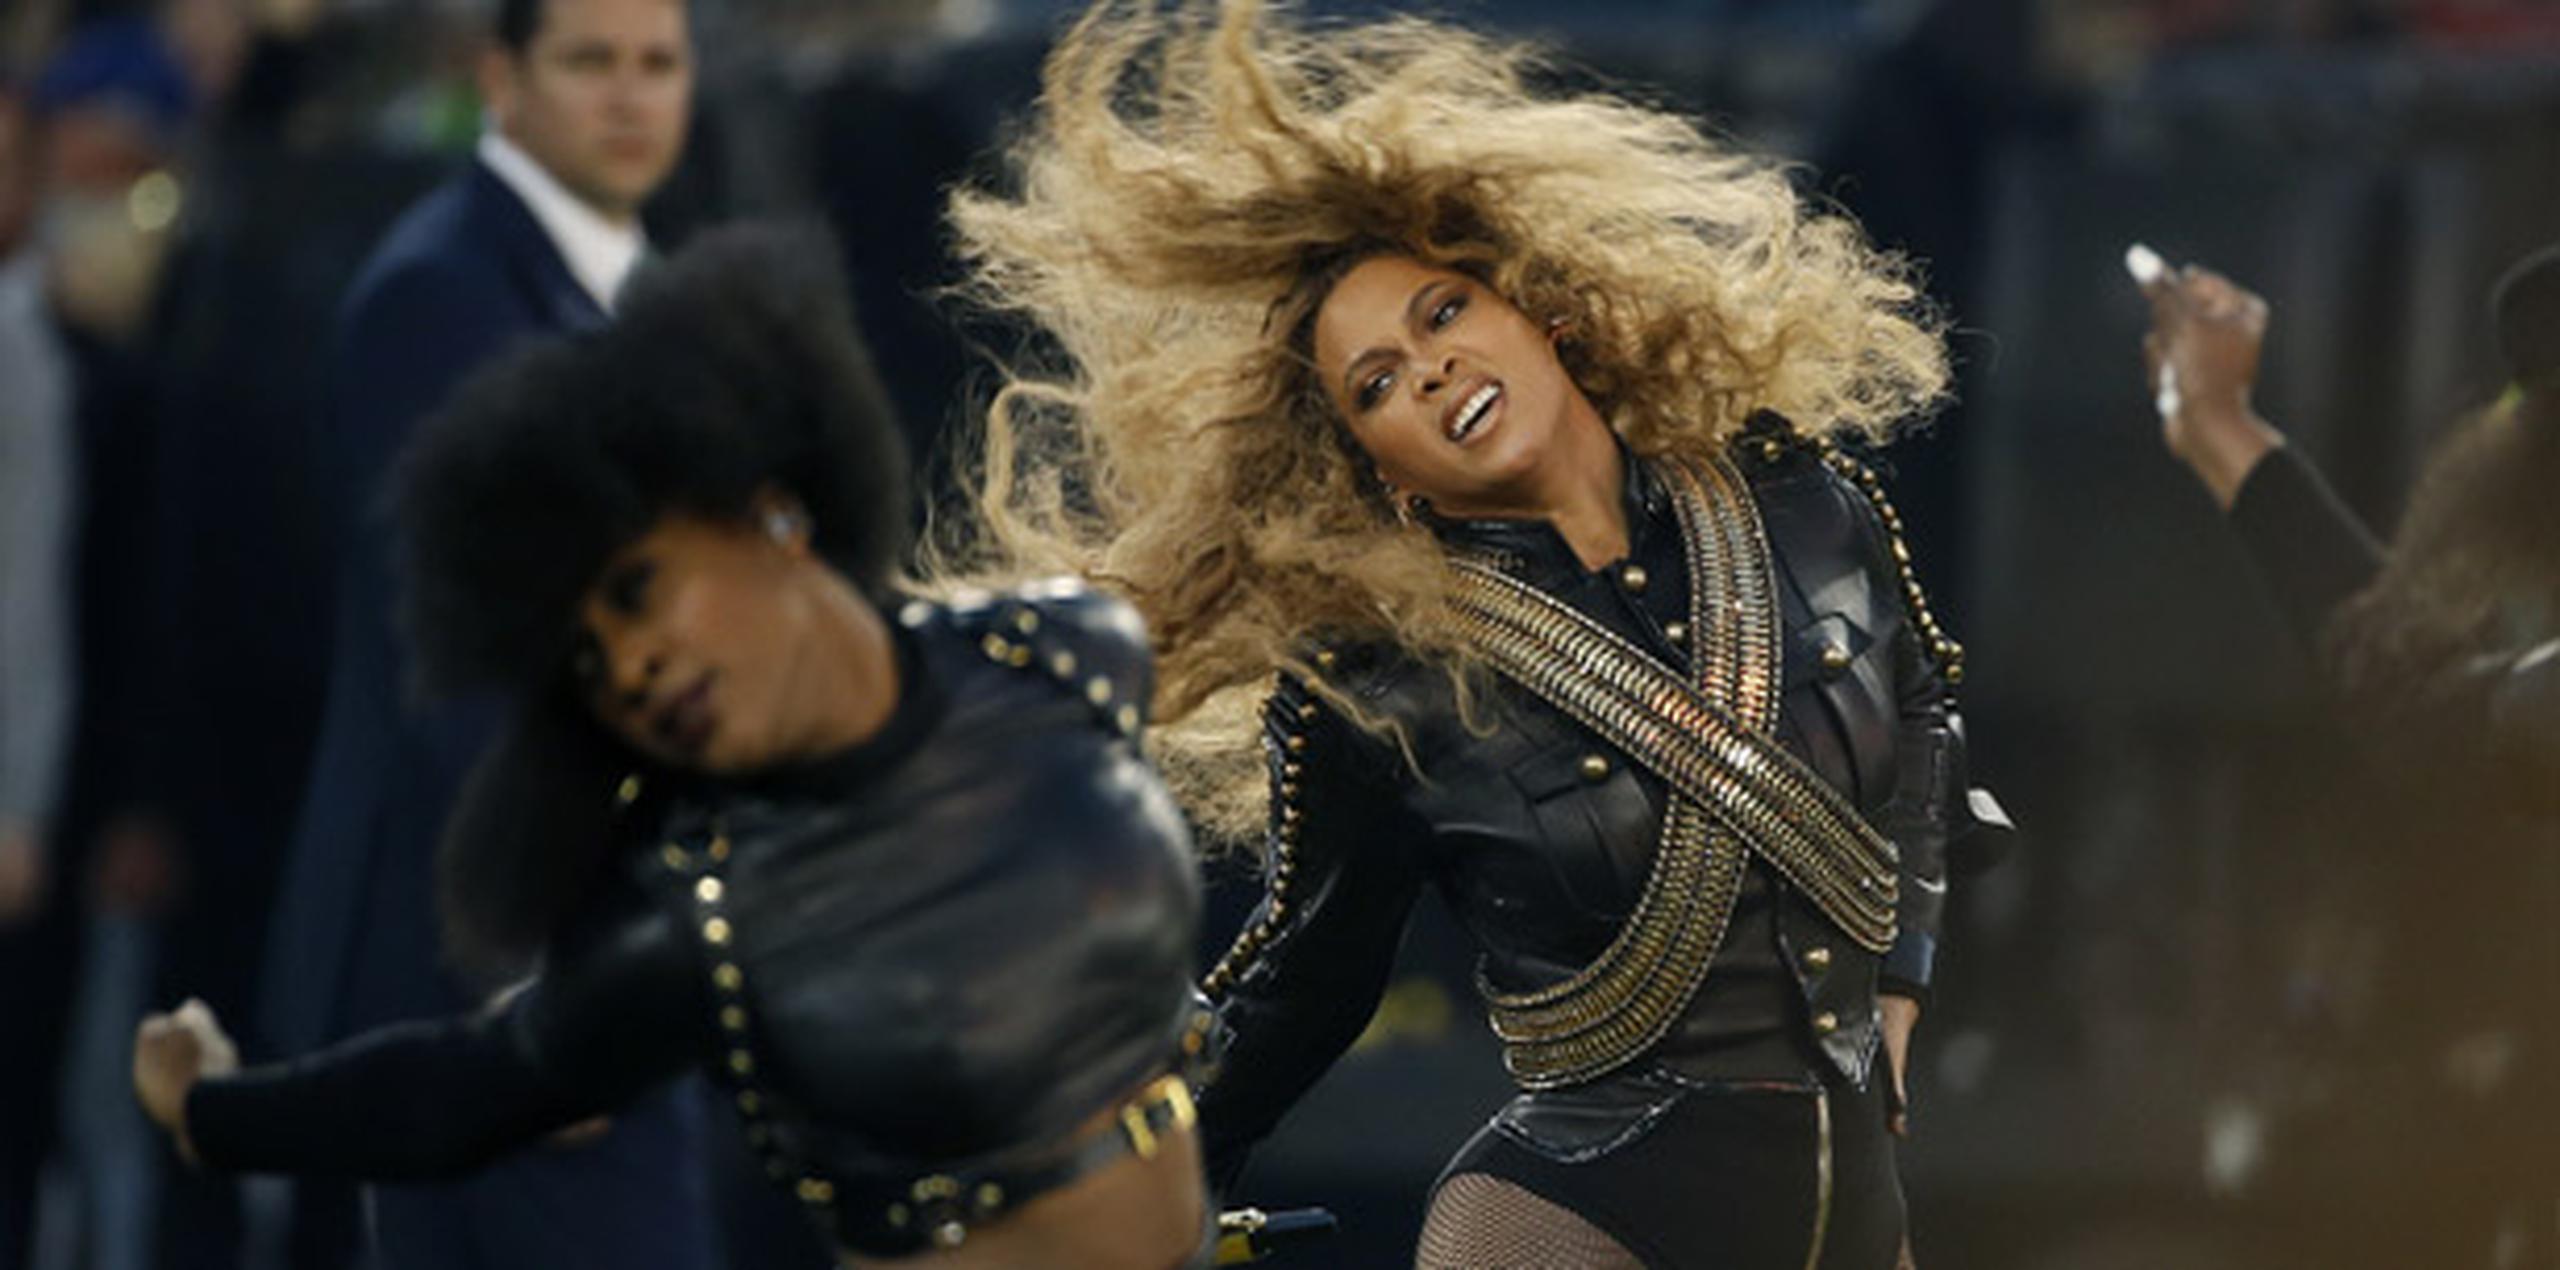 Durante su participación, Beyonce interpretó su nuevo tema “Formation”. (AP)